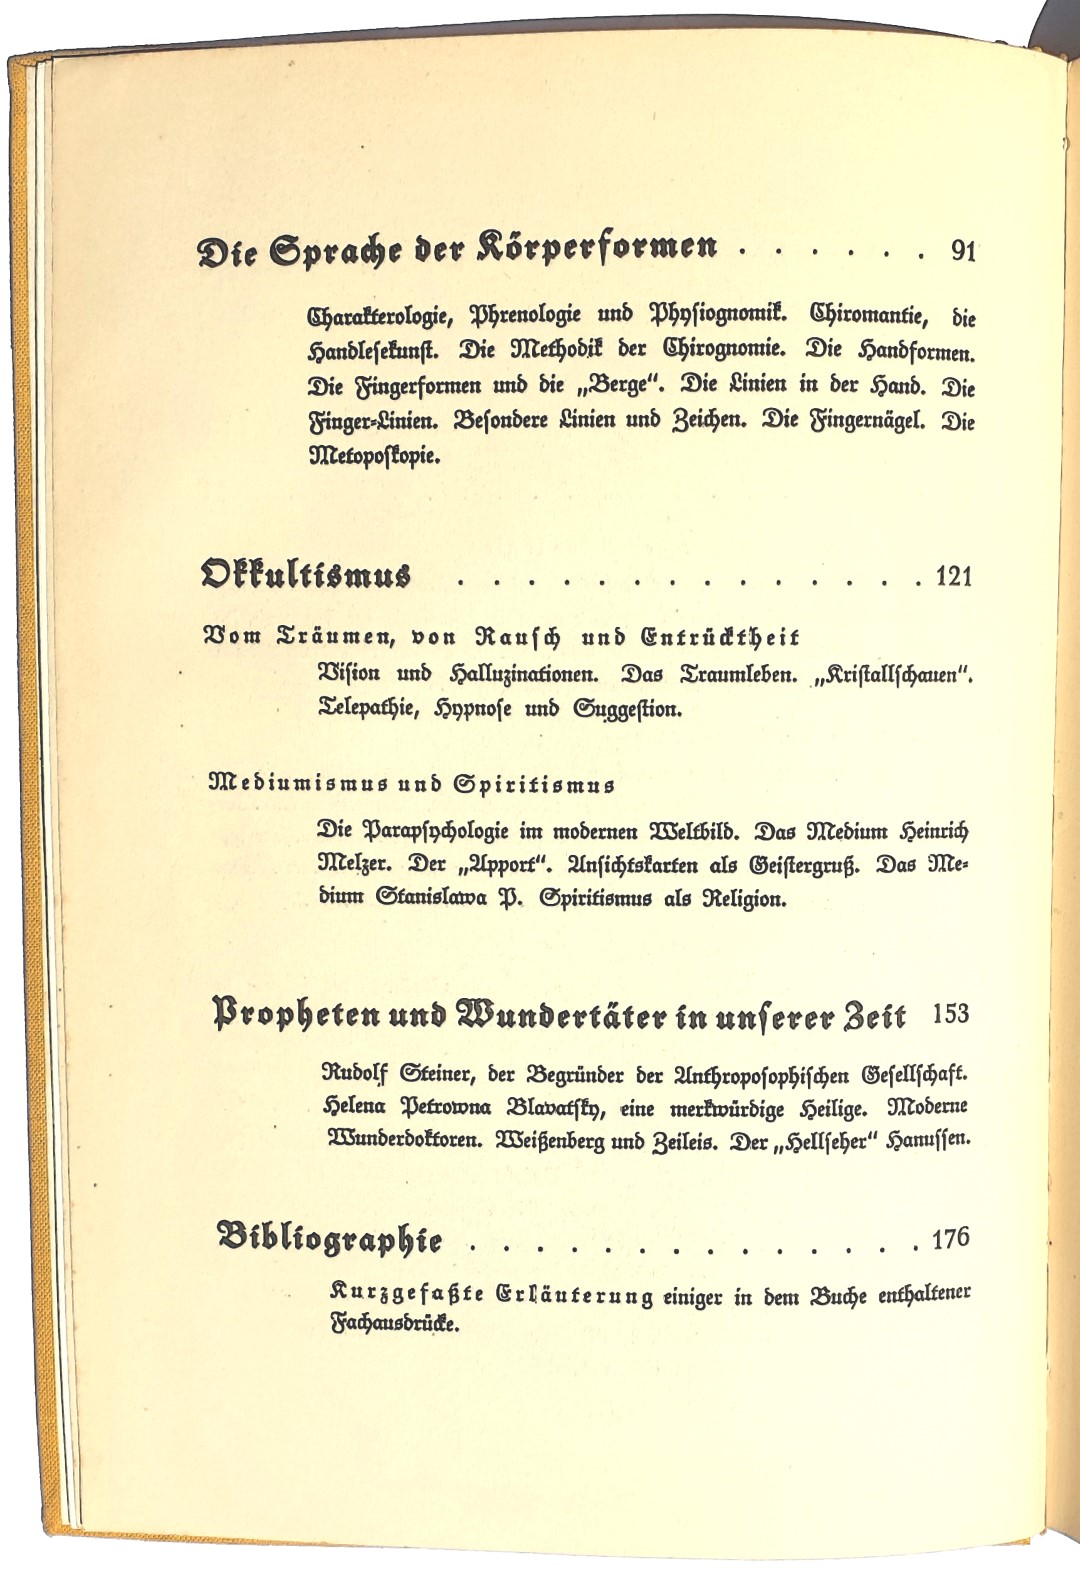 Friedrich Mellinger, Zeichen und Wunder, Berlin 1933